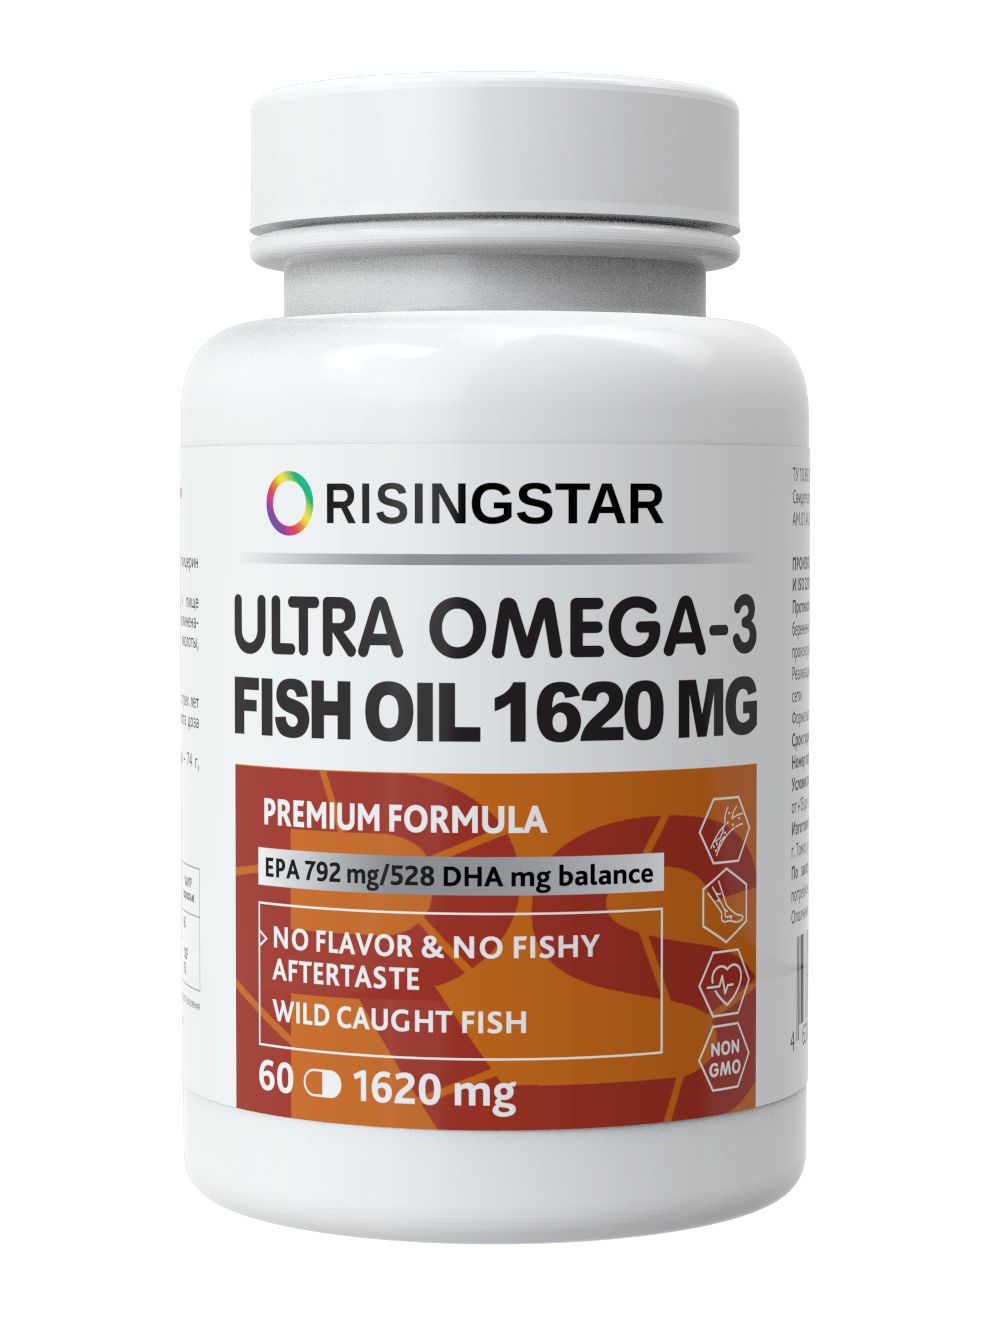 Купить Ultra Омега-3 1620 мг, Ультра Омега-3 Risingstar рыбий жир EPA 792/528 DHA жирные кислоты 1620 мг капсулы 60 шт.